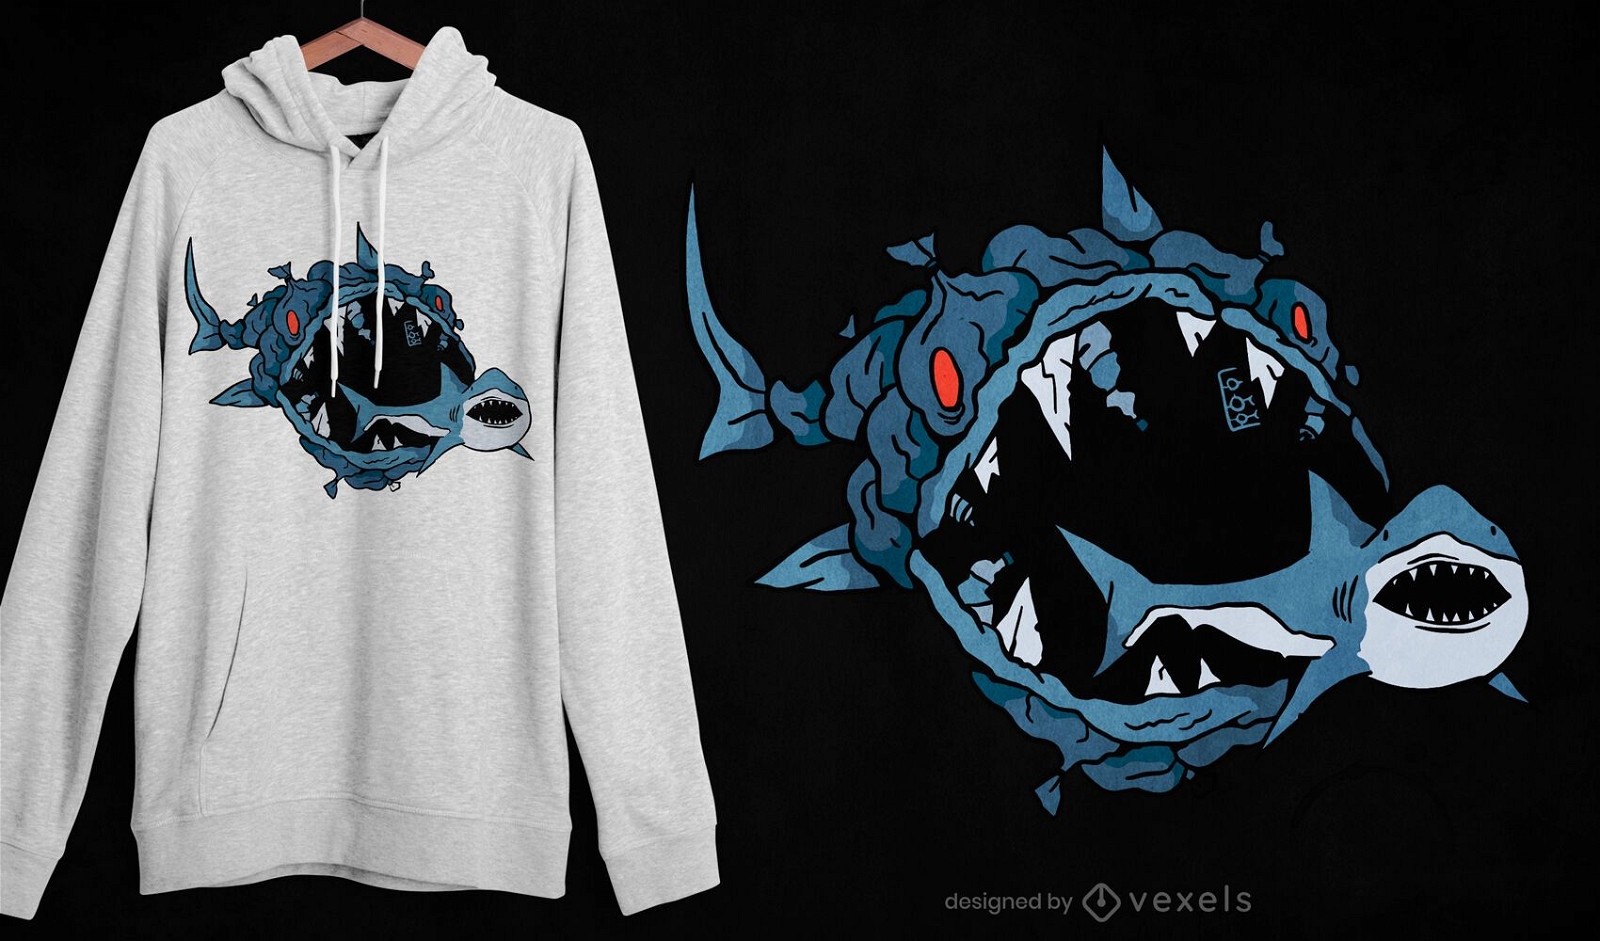 Monster fish eating shark t-shirt design